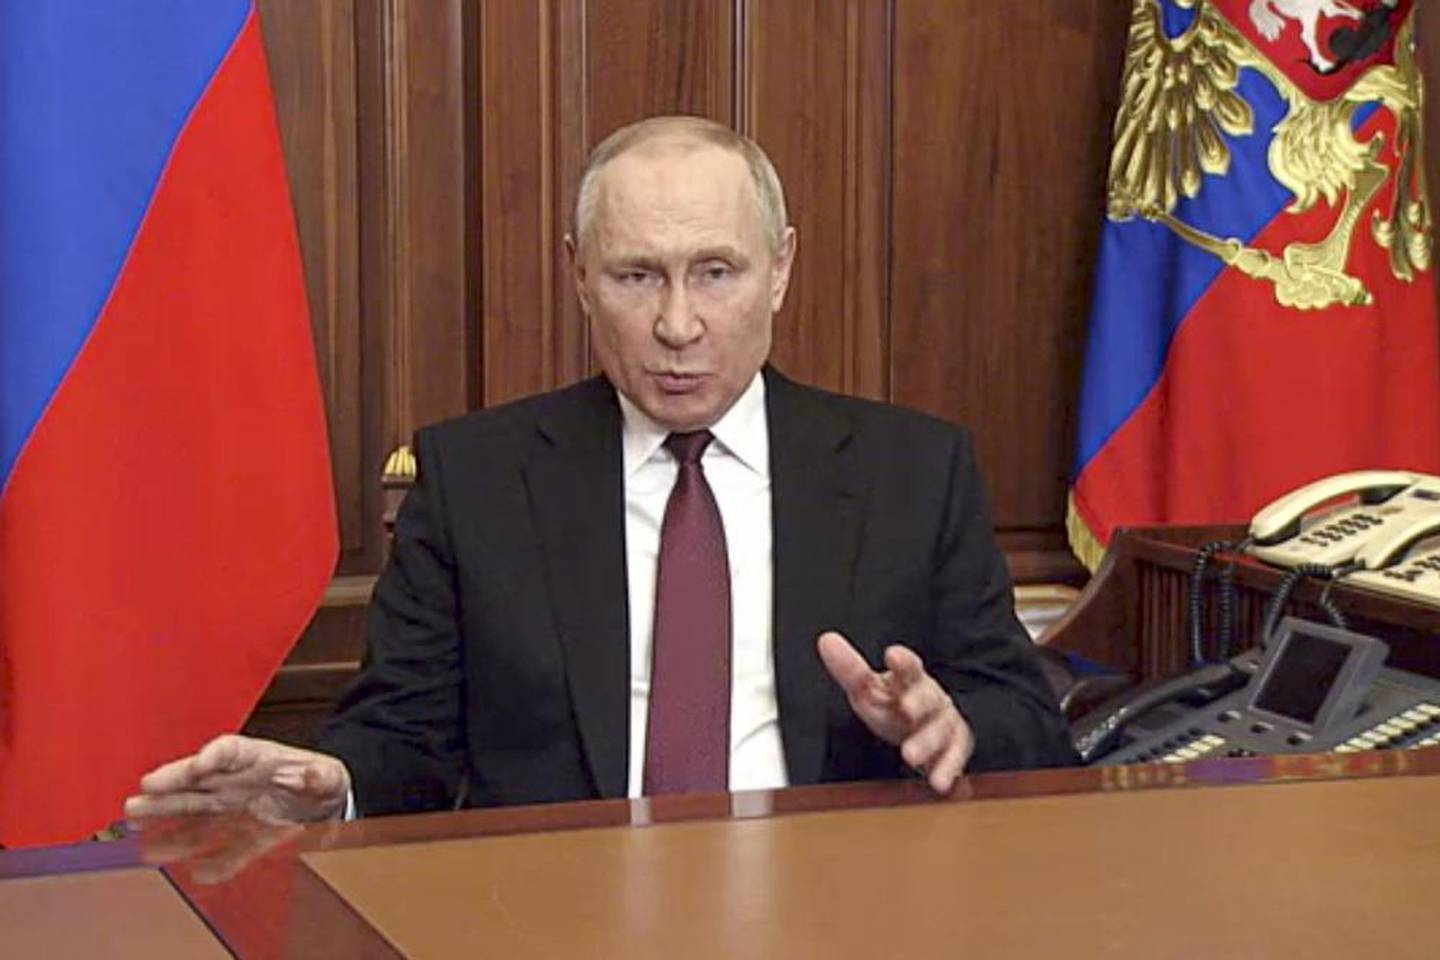 俄罗斯总统弗拉基米尔·普京于 2022 年 2 月 24 日星期四在俄罗斯莫斯科向全国发表讲话。照片/美联社